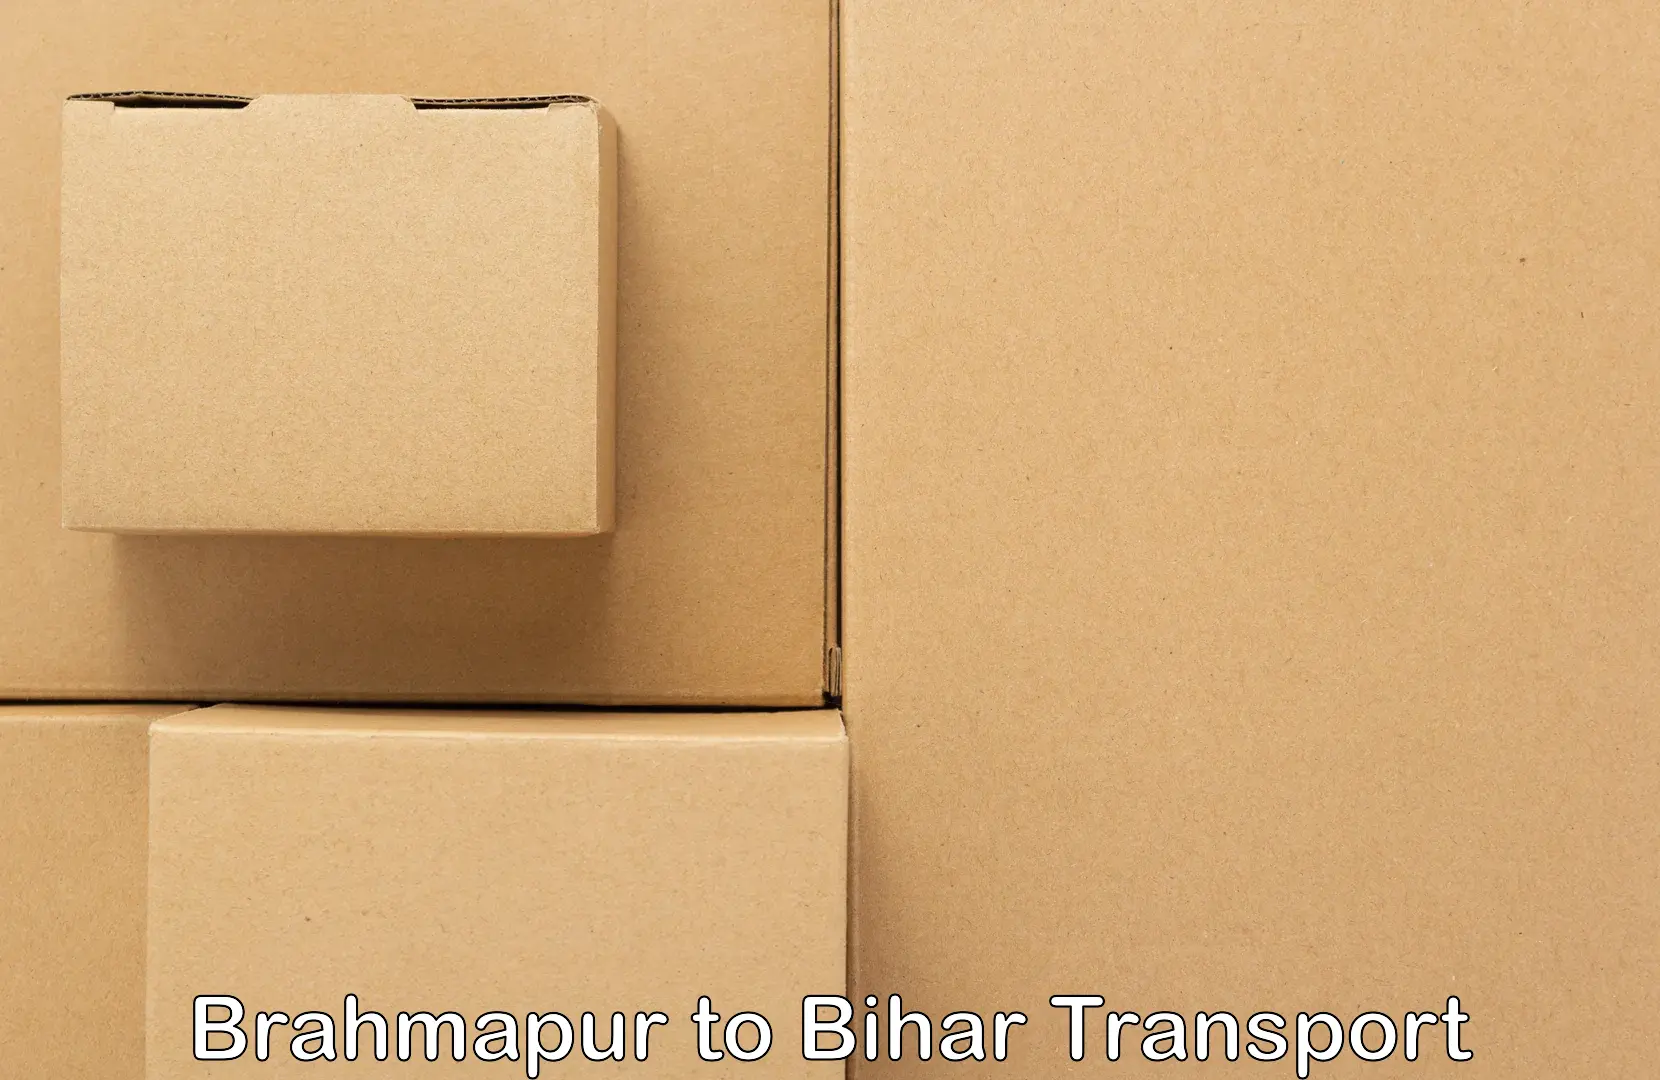 Daily transport service Brahmapur to Laheriasarai